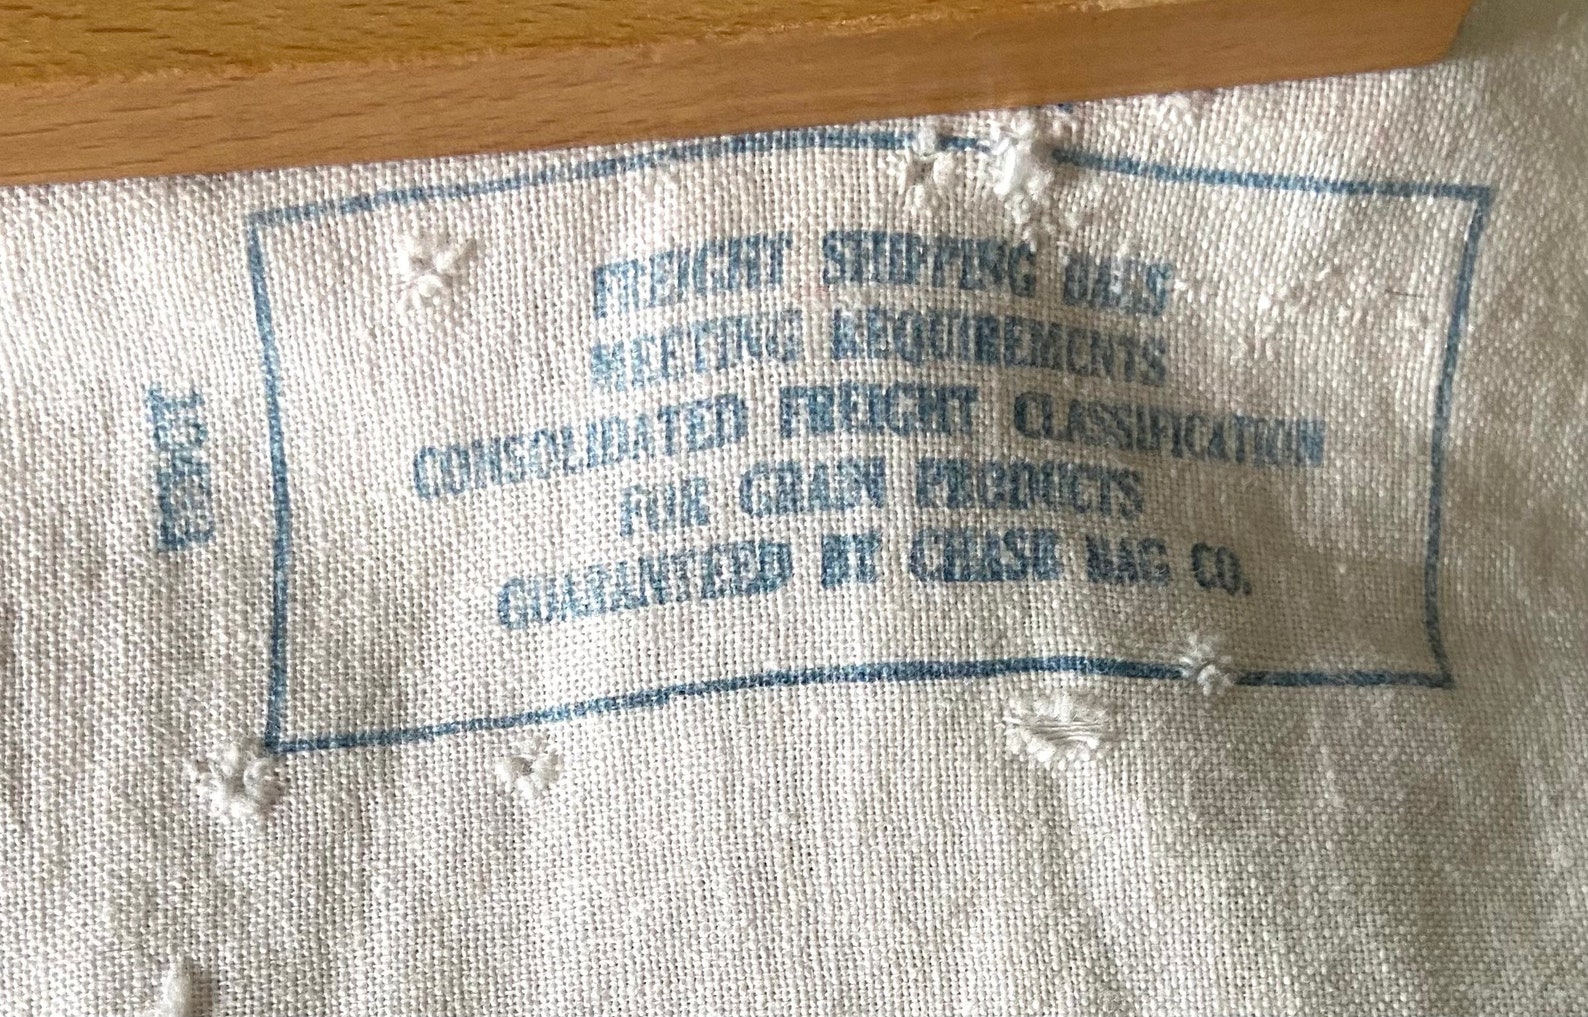 Vintage Robin Hood Flour 49 lbs.net Flour Fabric Bag Rare | Etsy